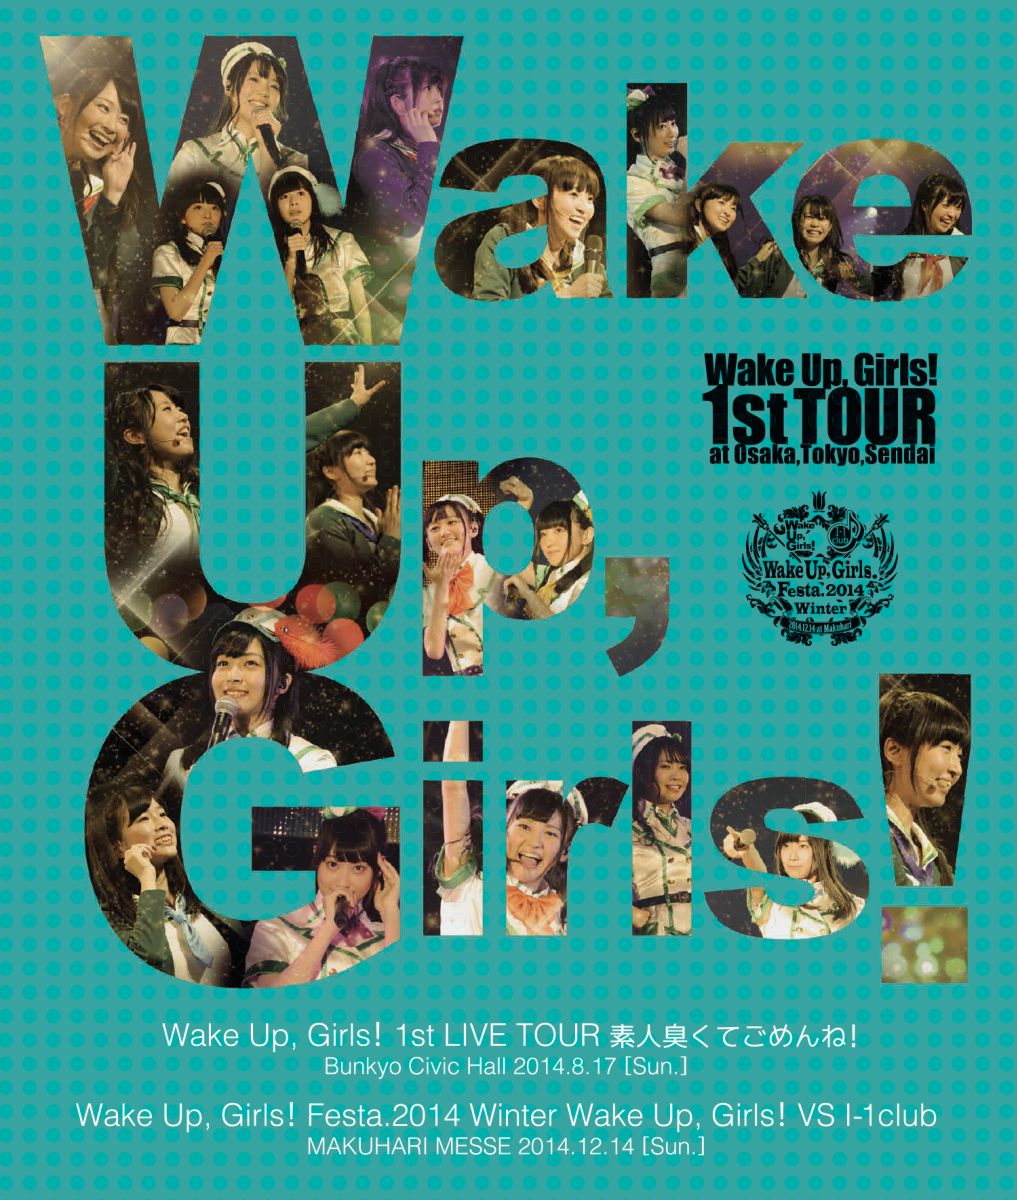 【特典なし】Wake Up, Girls! 1st LIVE TOUR 素人臭くてごめんね。/Wake Up, Girls!VS I-1club【Blu-ray】 [ (V.A.) ]画像